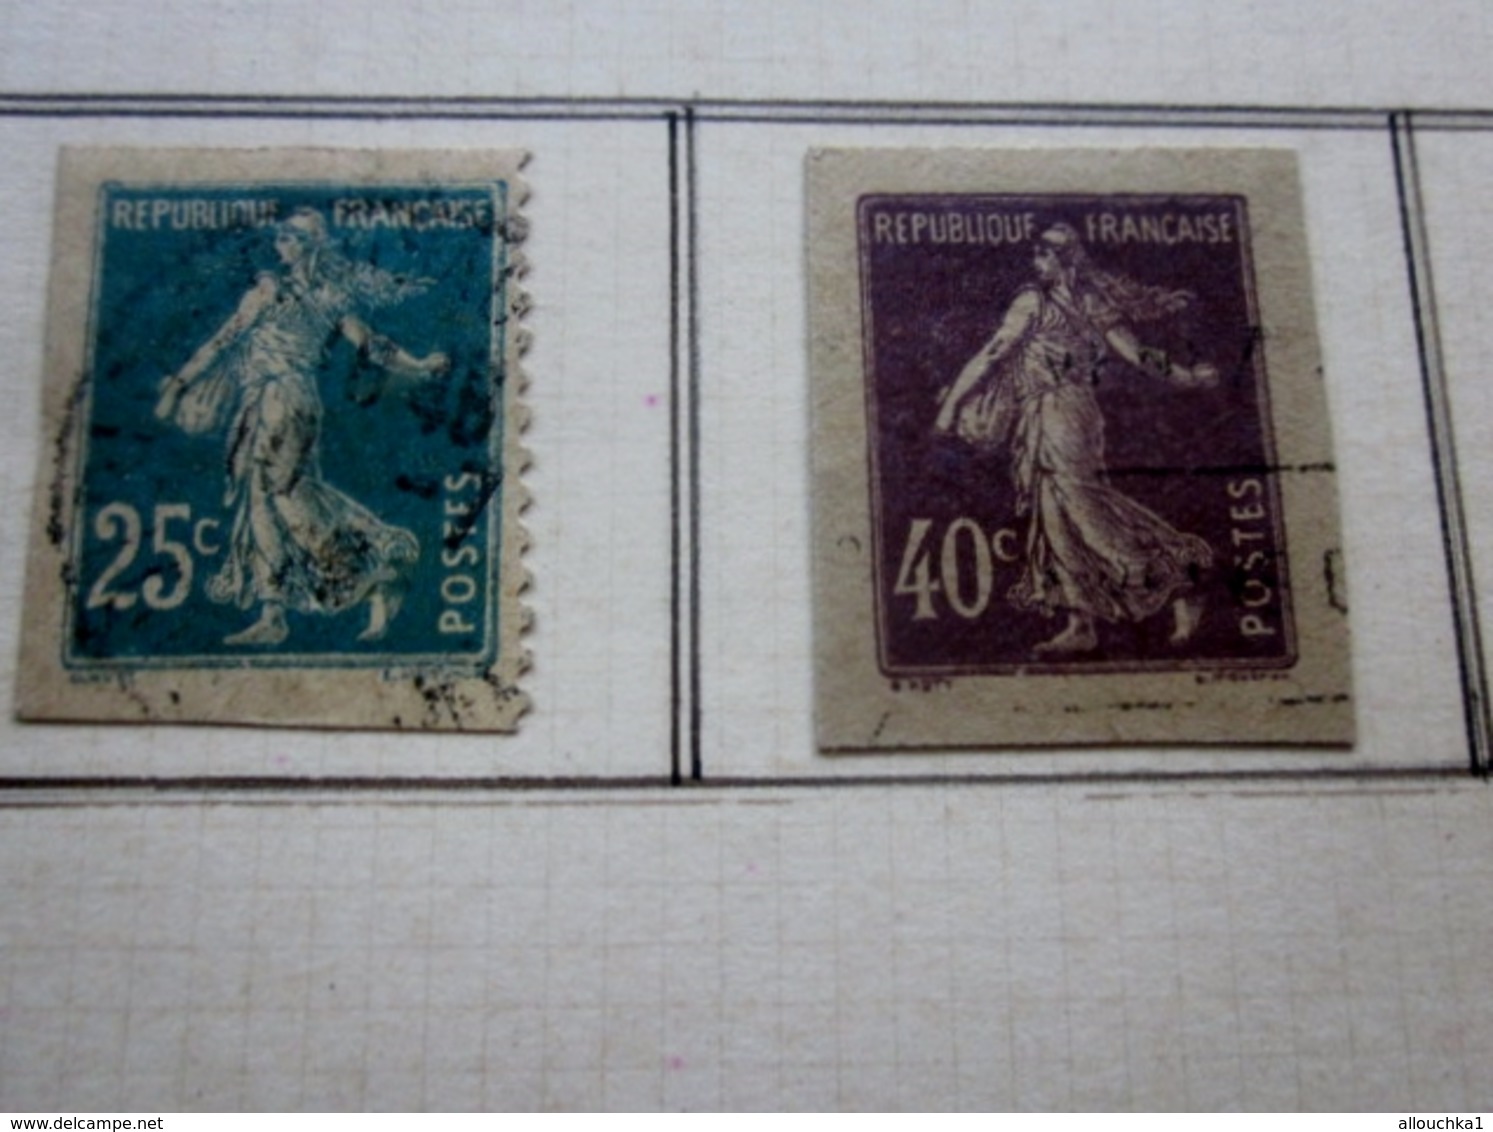 Lot de 9 Timbres  Entiers postaux Lots et collections:Entier Postal sur fragments Années & Types divers  Europe France